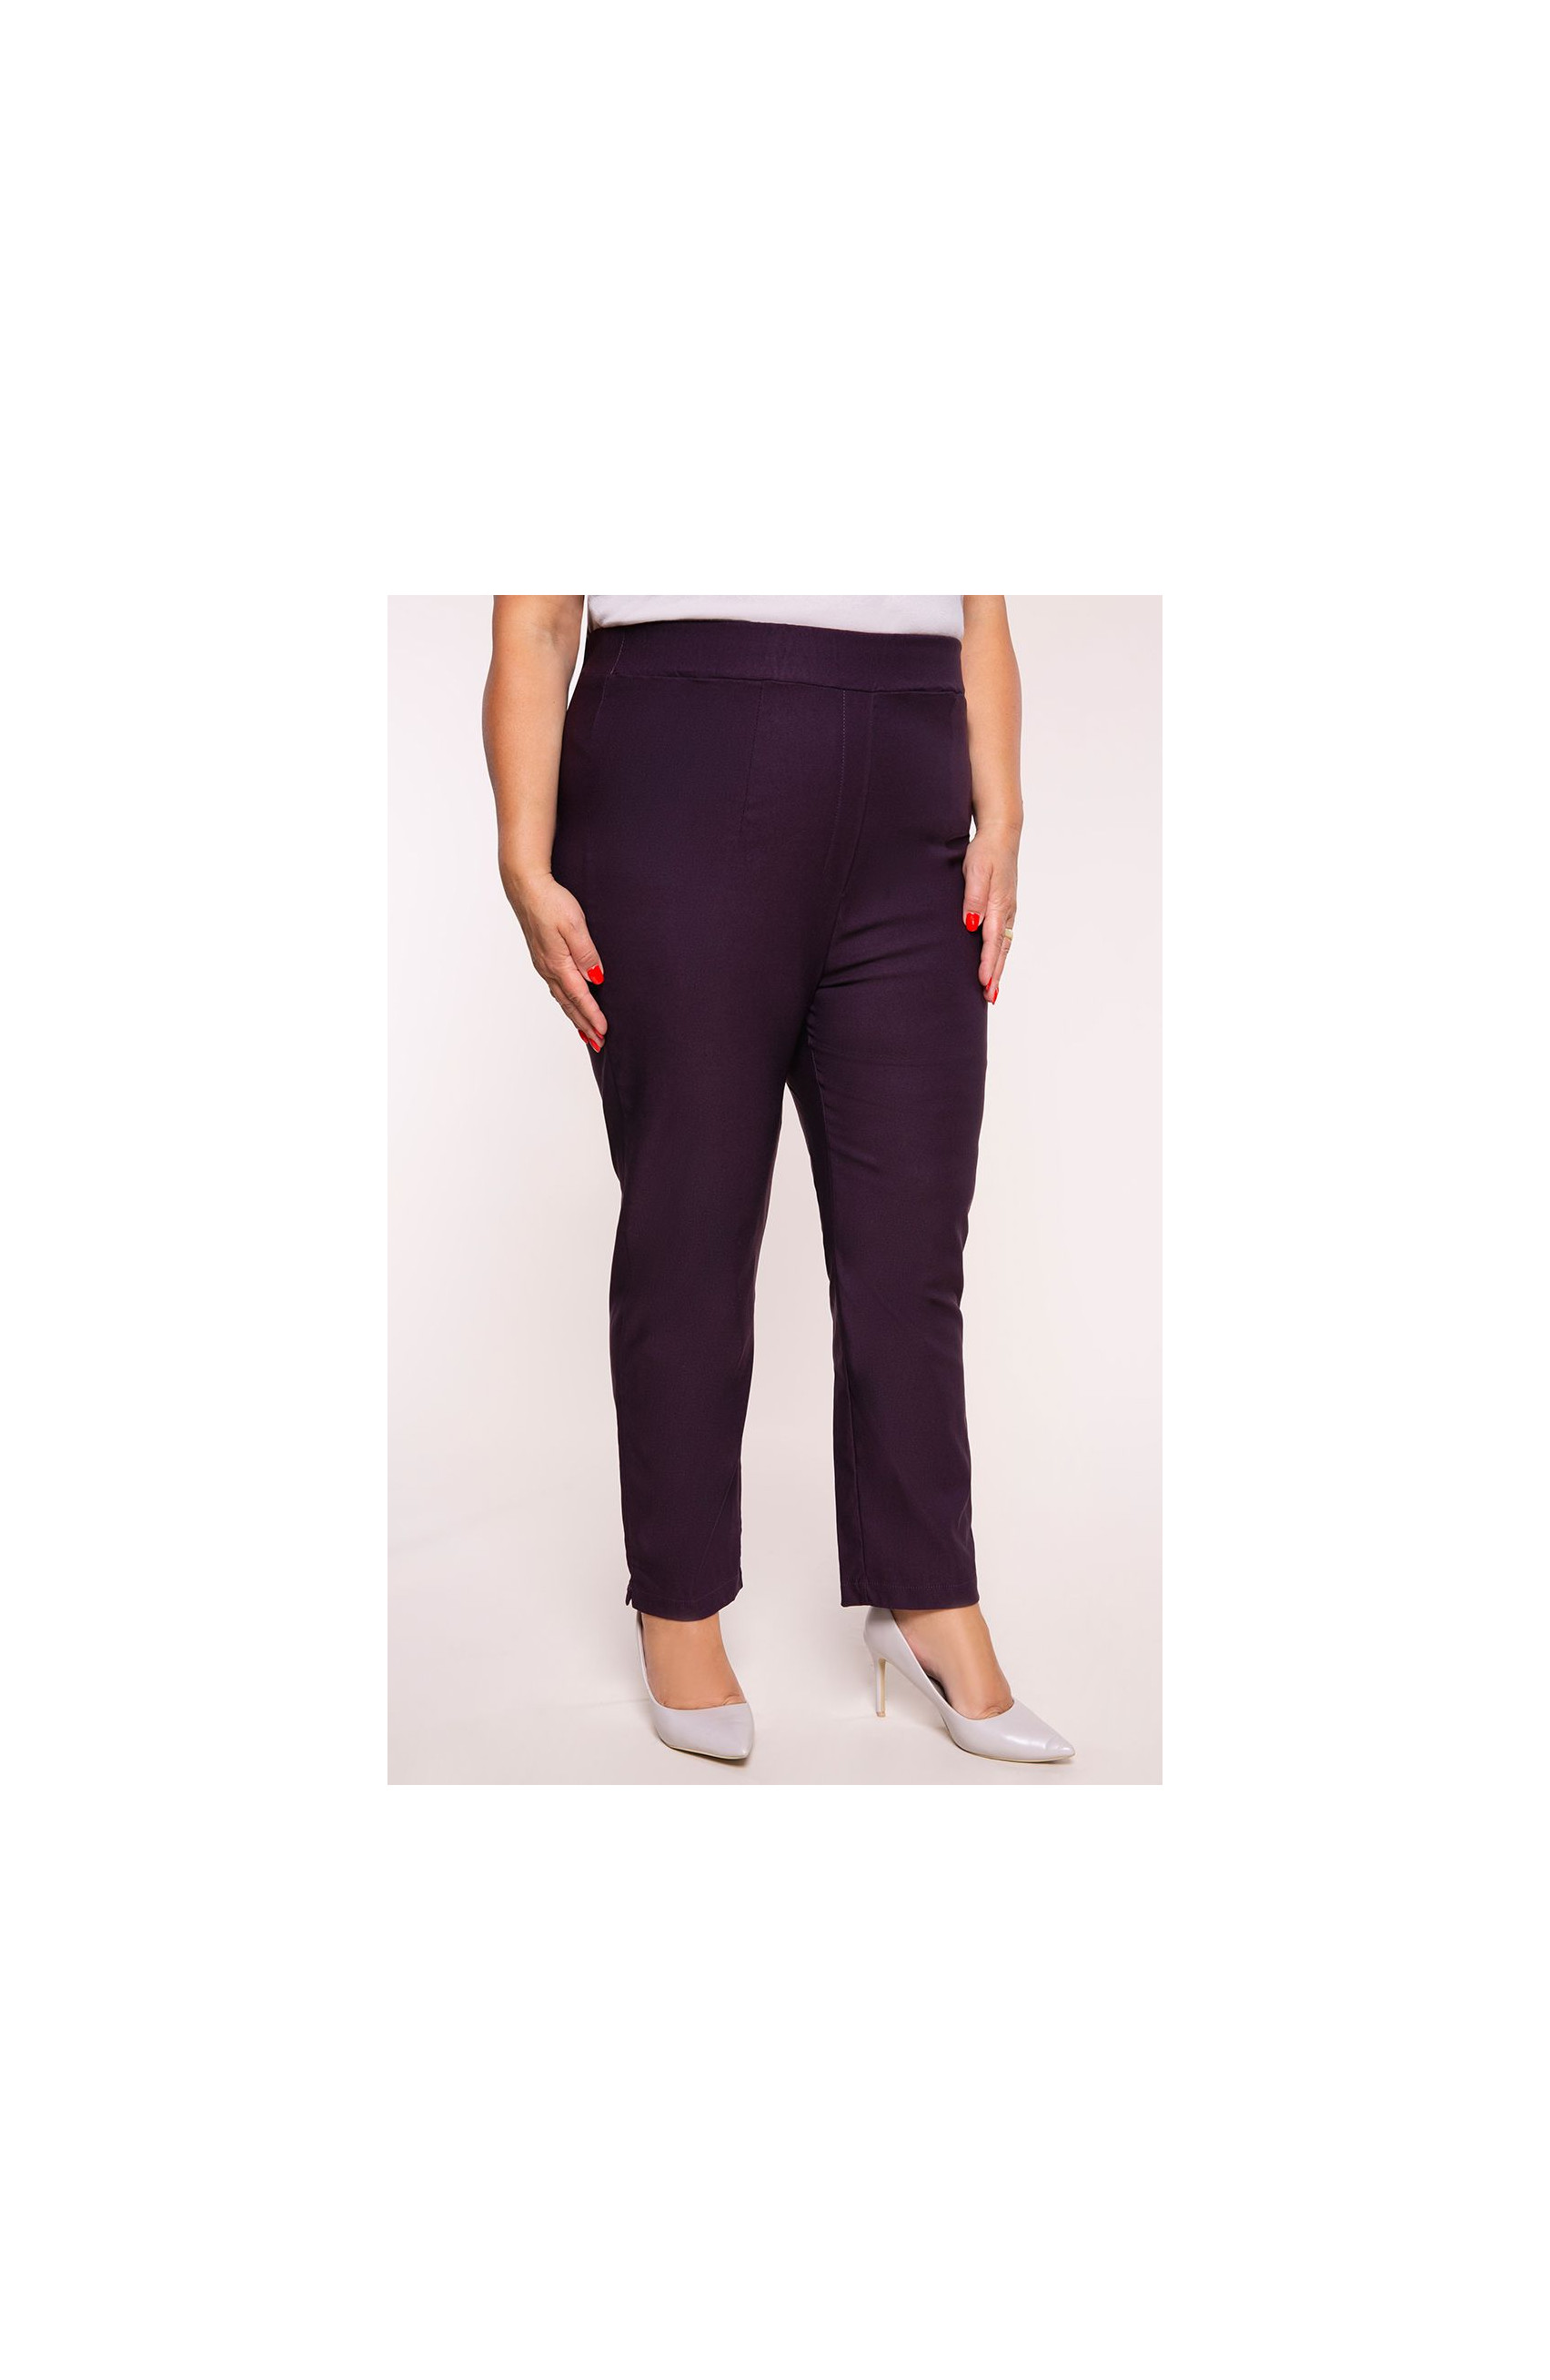 Purpurowe spodnie cygaretki plus size dla puszystych bardzo wysoki stan